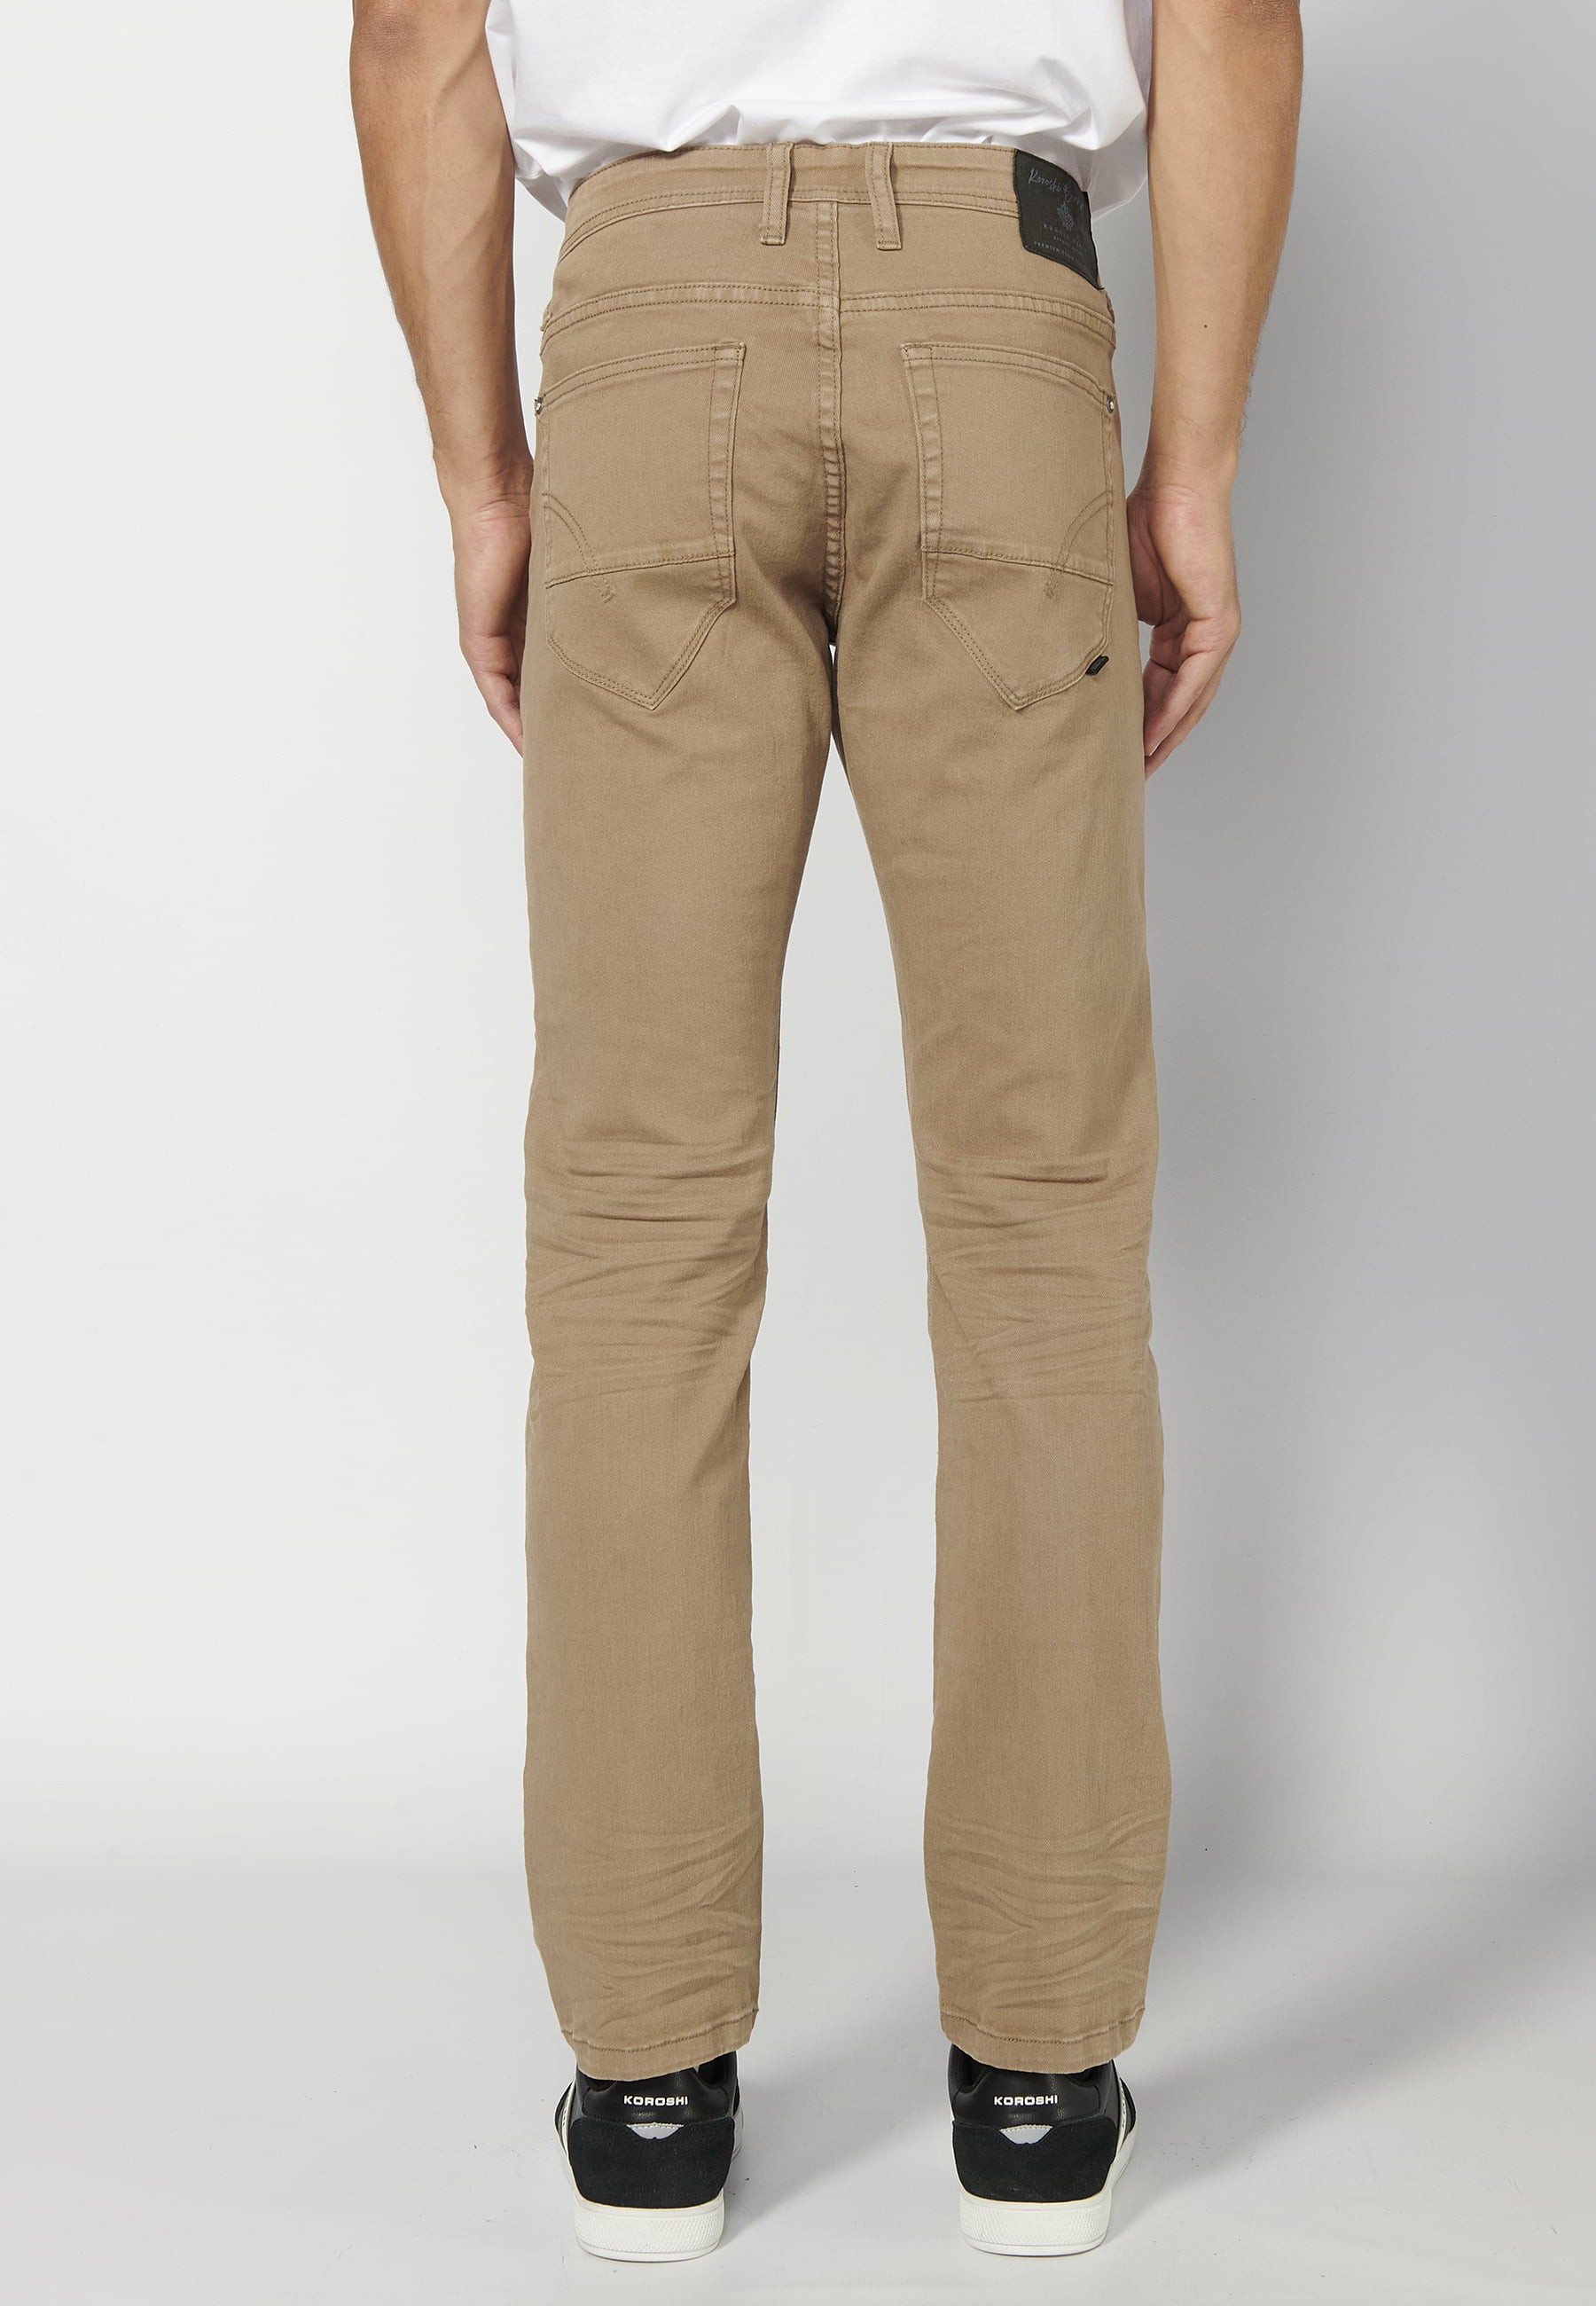 Pantalón largo straigth regular fit, con cinco bolsillos, color Beige, para Hombre 2